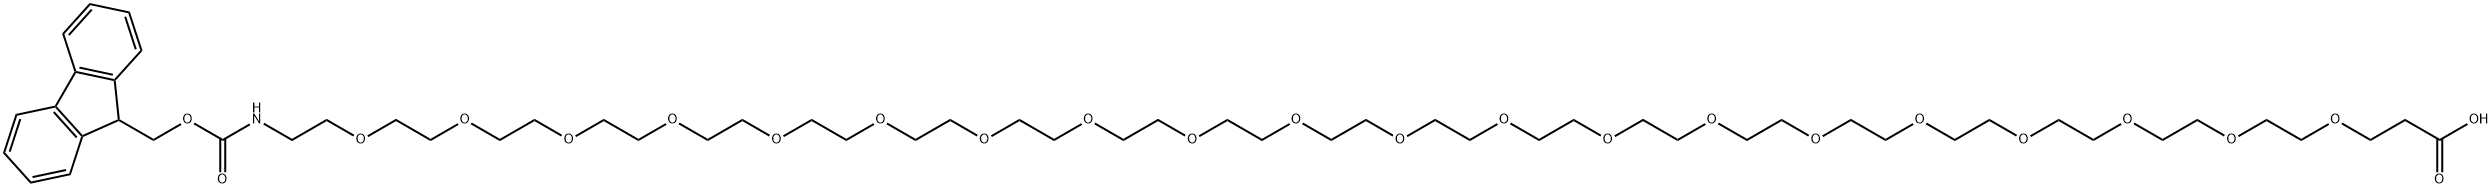 Fmoc-N-amido-PEG20-acid Structure